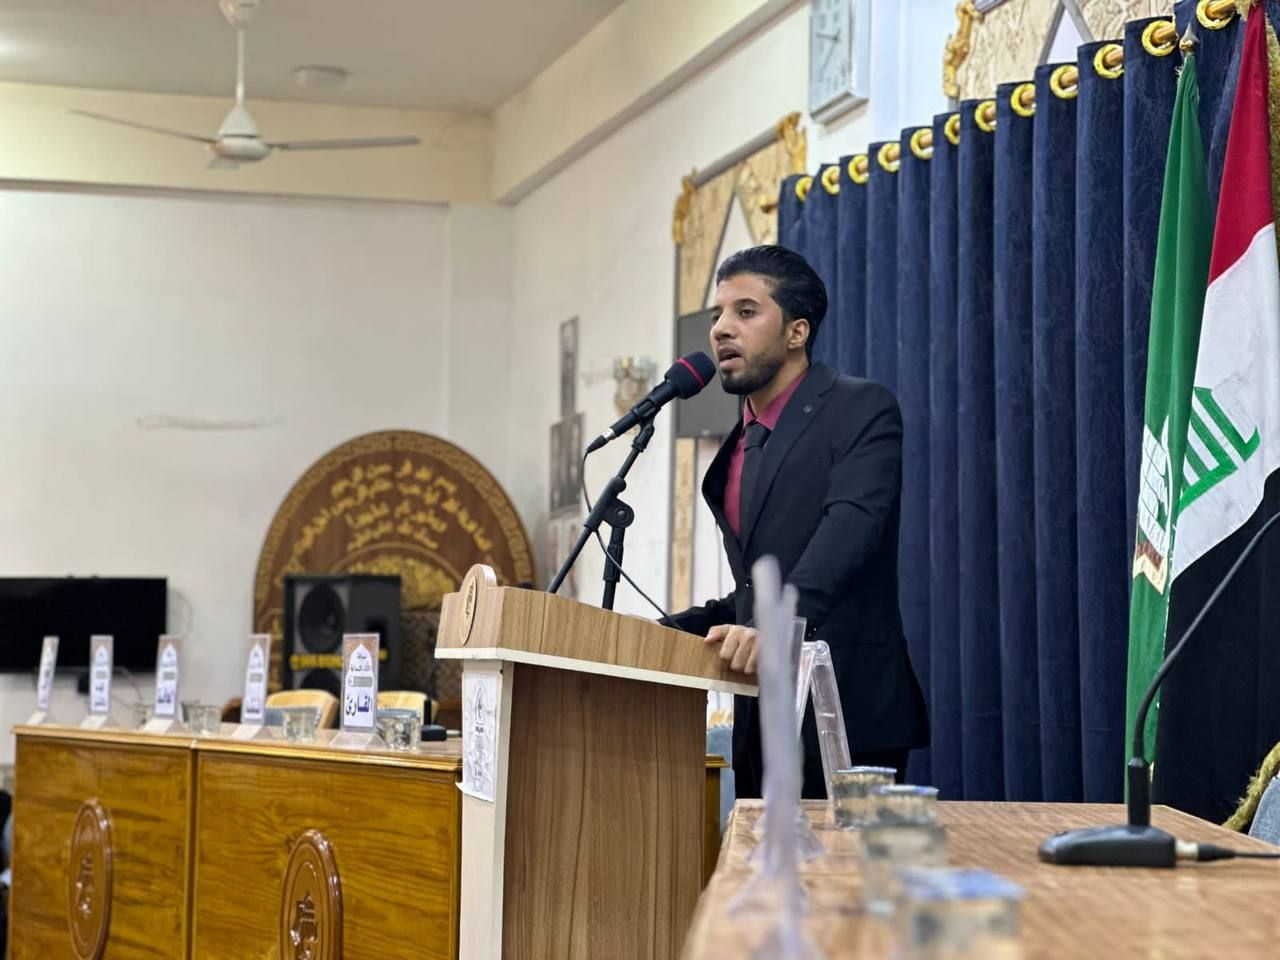 المَجمَع العلميّ يطلق المسابقة الفرقية القرآنية الثانية في الهندية